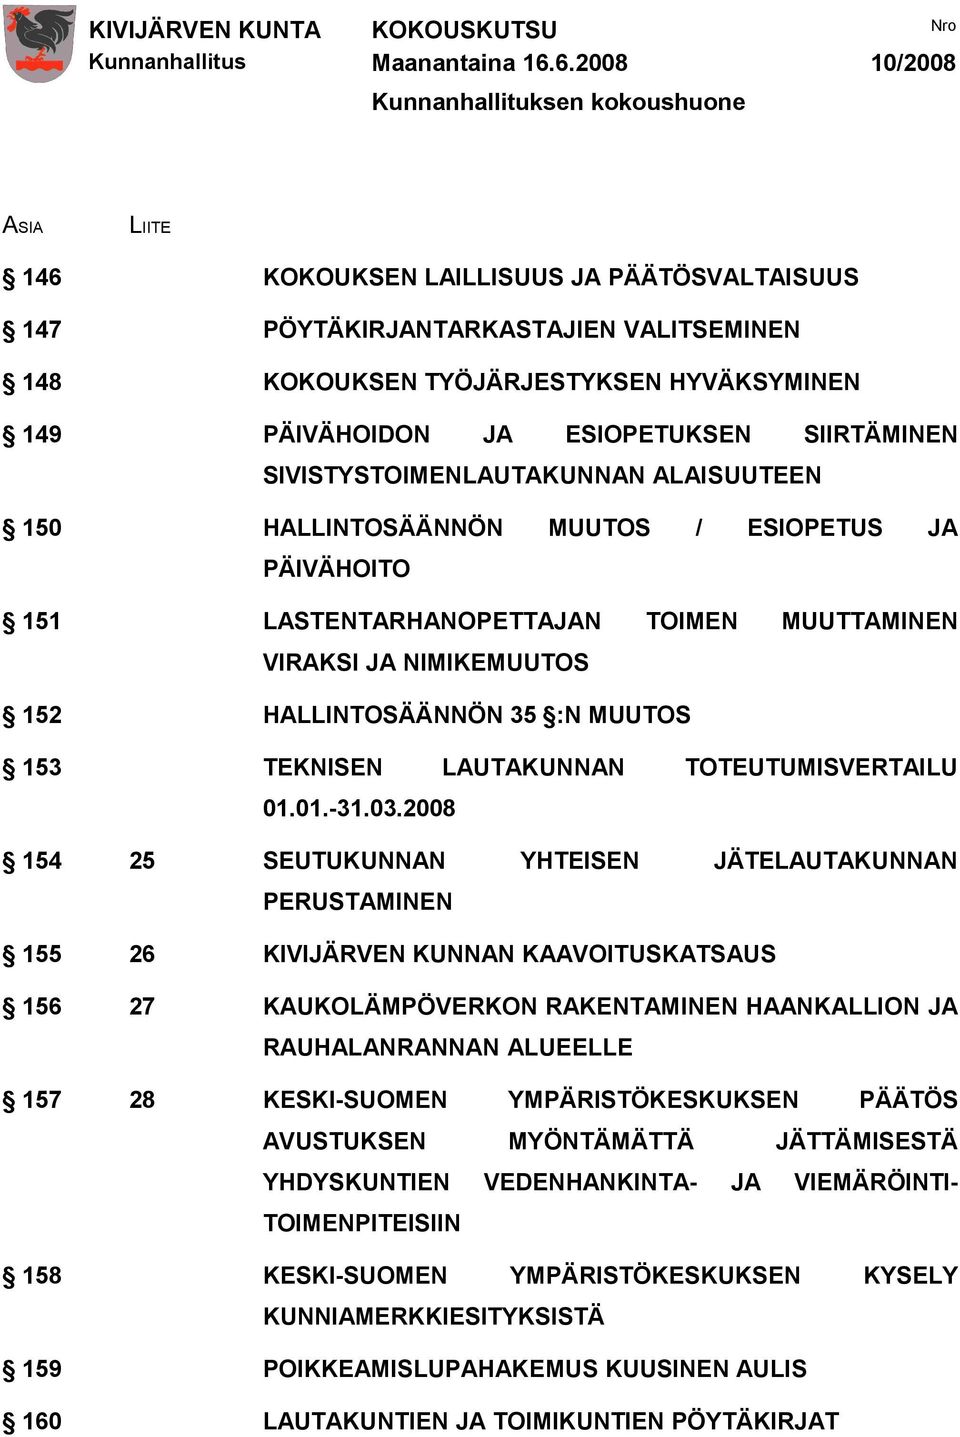 VIRAKSI JA NIMIKEMUUTOS 152 HALLINTOSÄÄNNÖN 35 :N MUUTOS 153 TEKNISEN LAUTAKUNNAN TOTEUTUMISVERTAILU 01.01.-31.03.